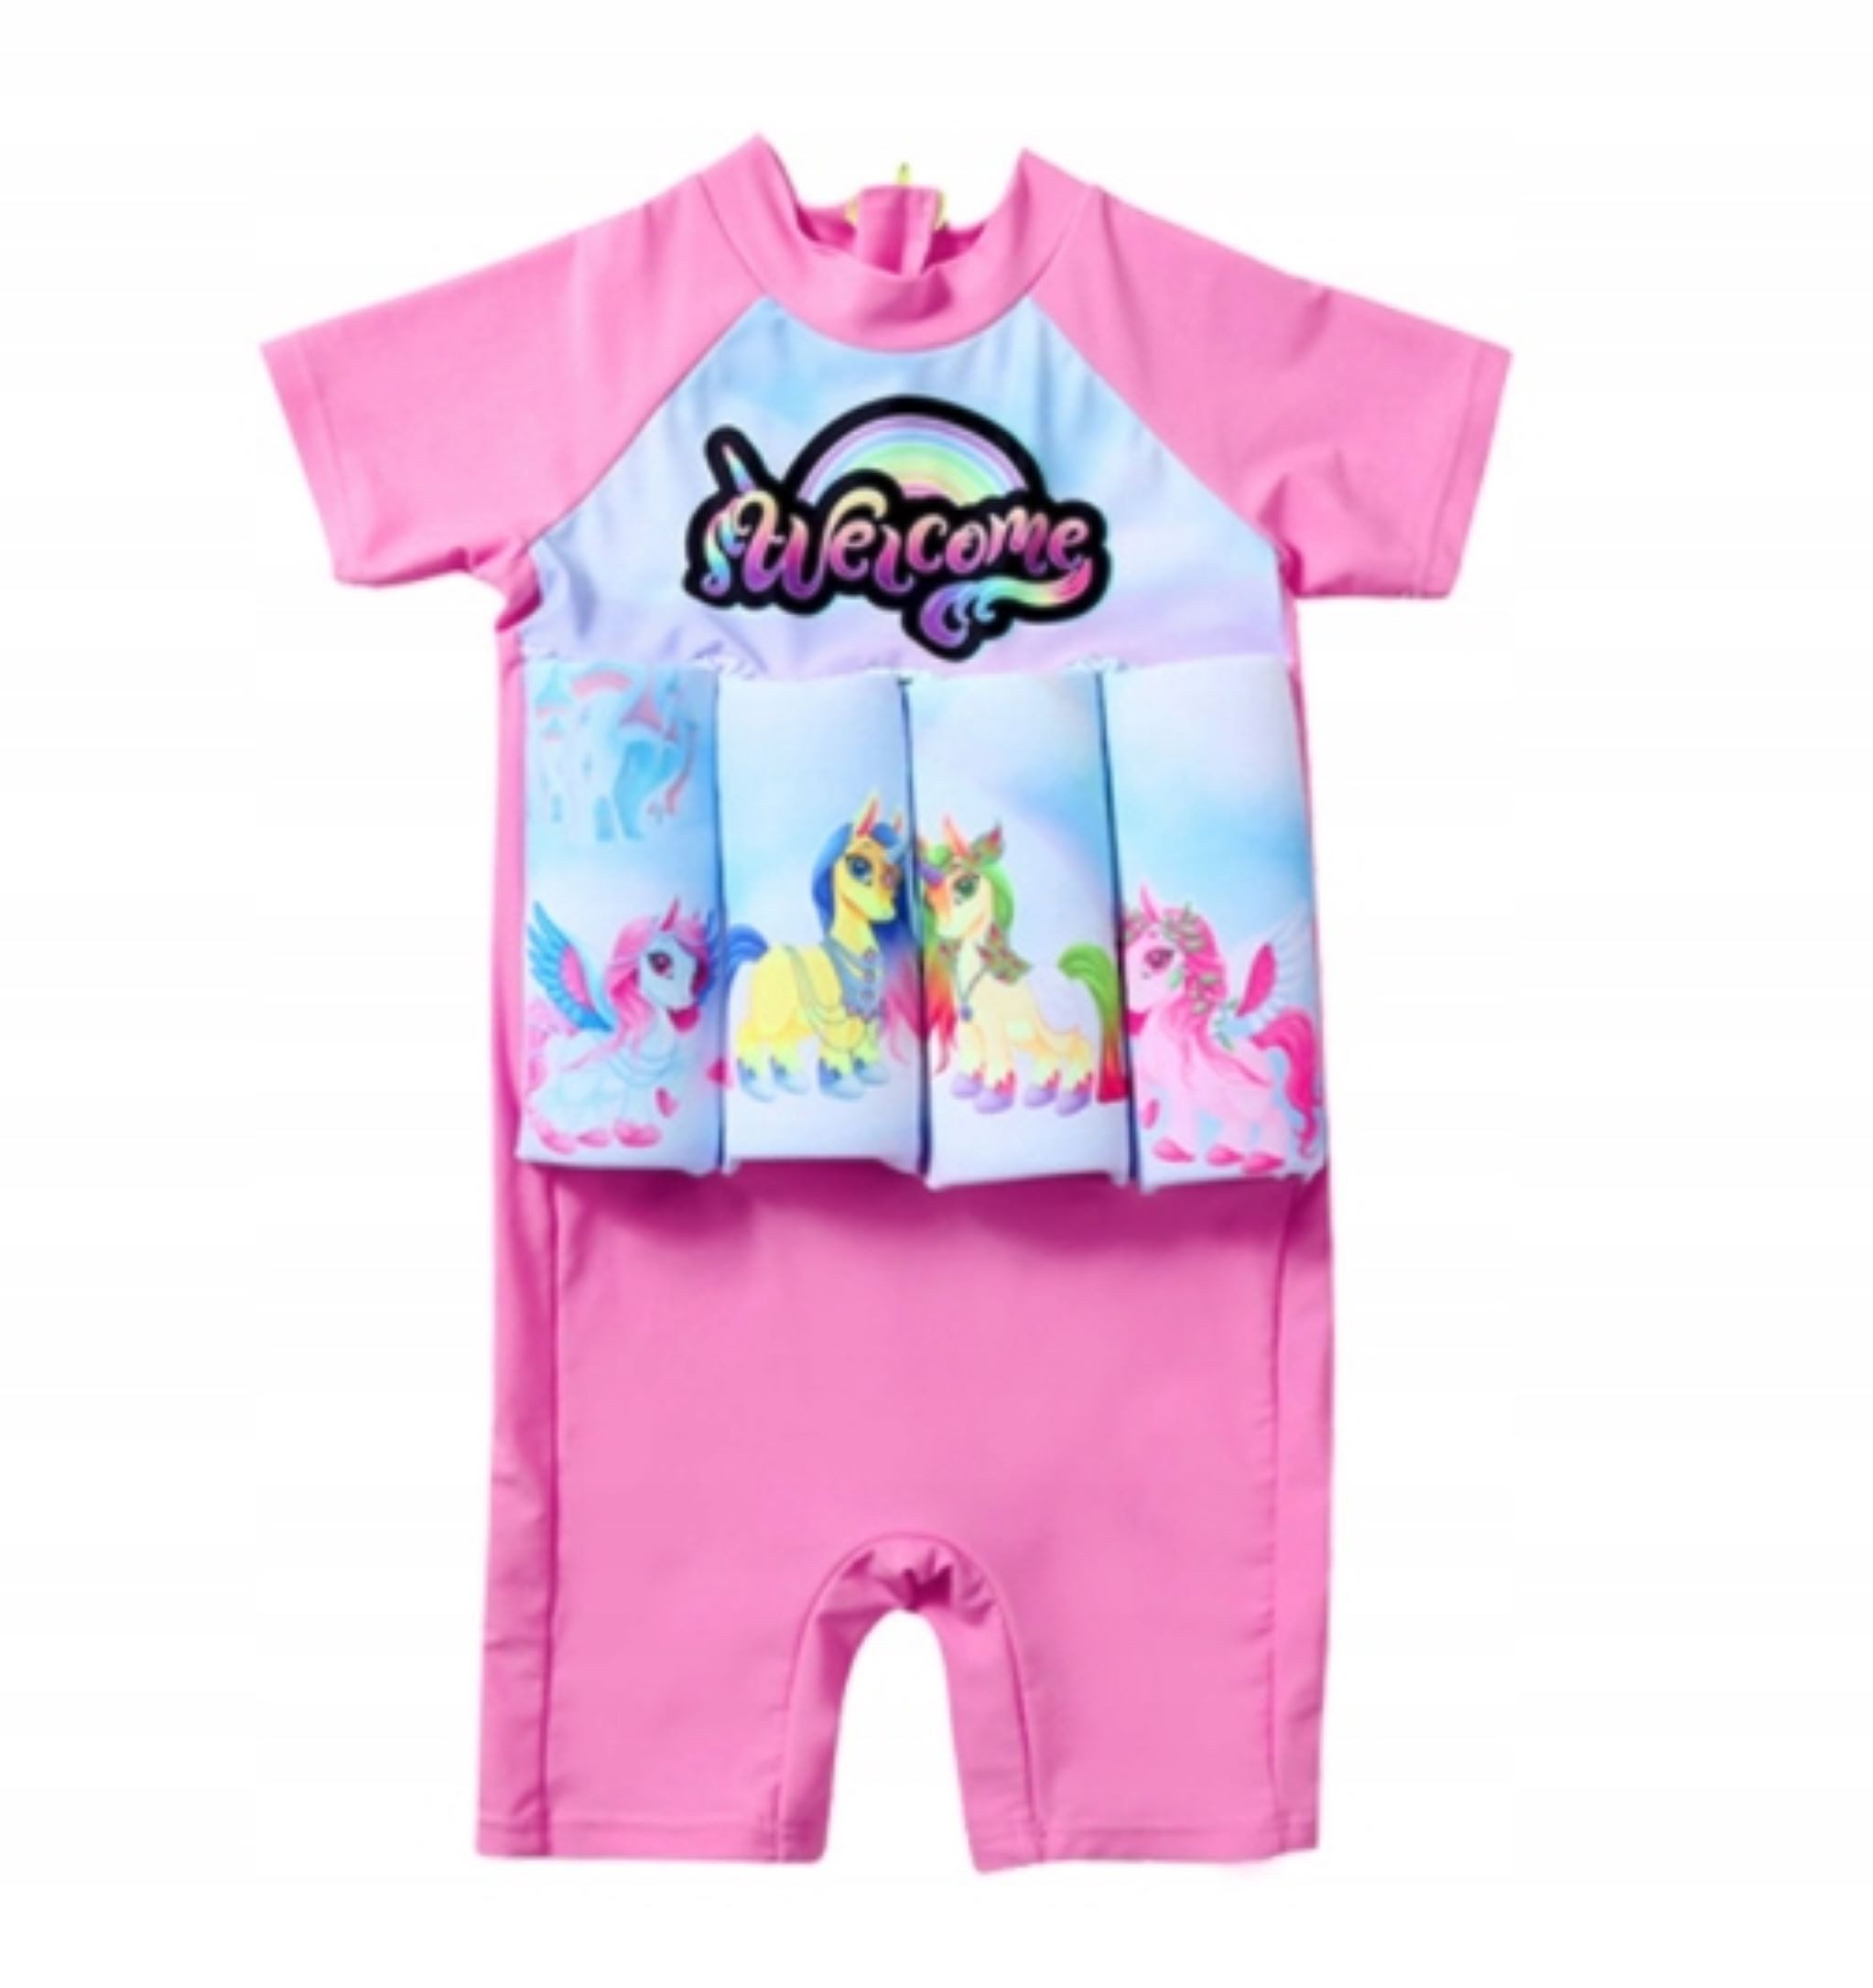 Festivalartikel Badeanzug Kinder UV Schutz Badeanzug mit Schwimmweste - 4-5 Jahre, Pony Design